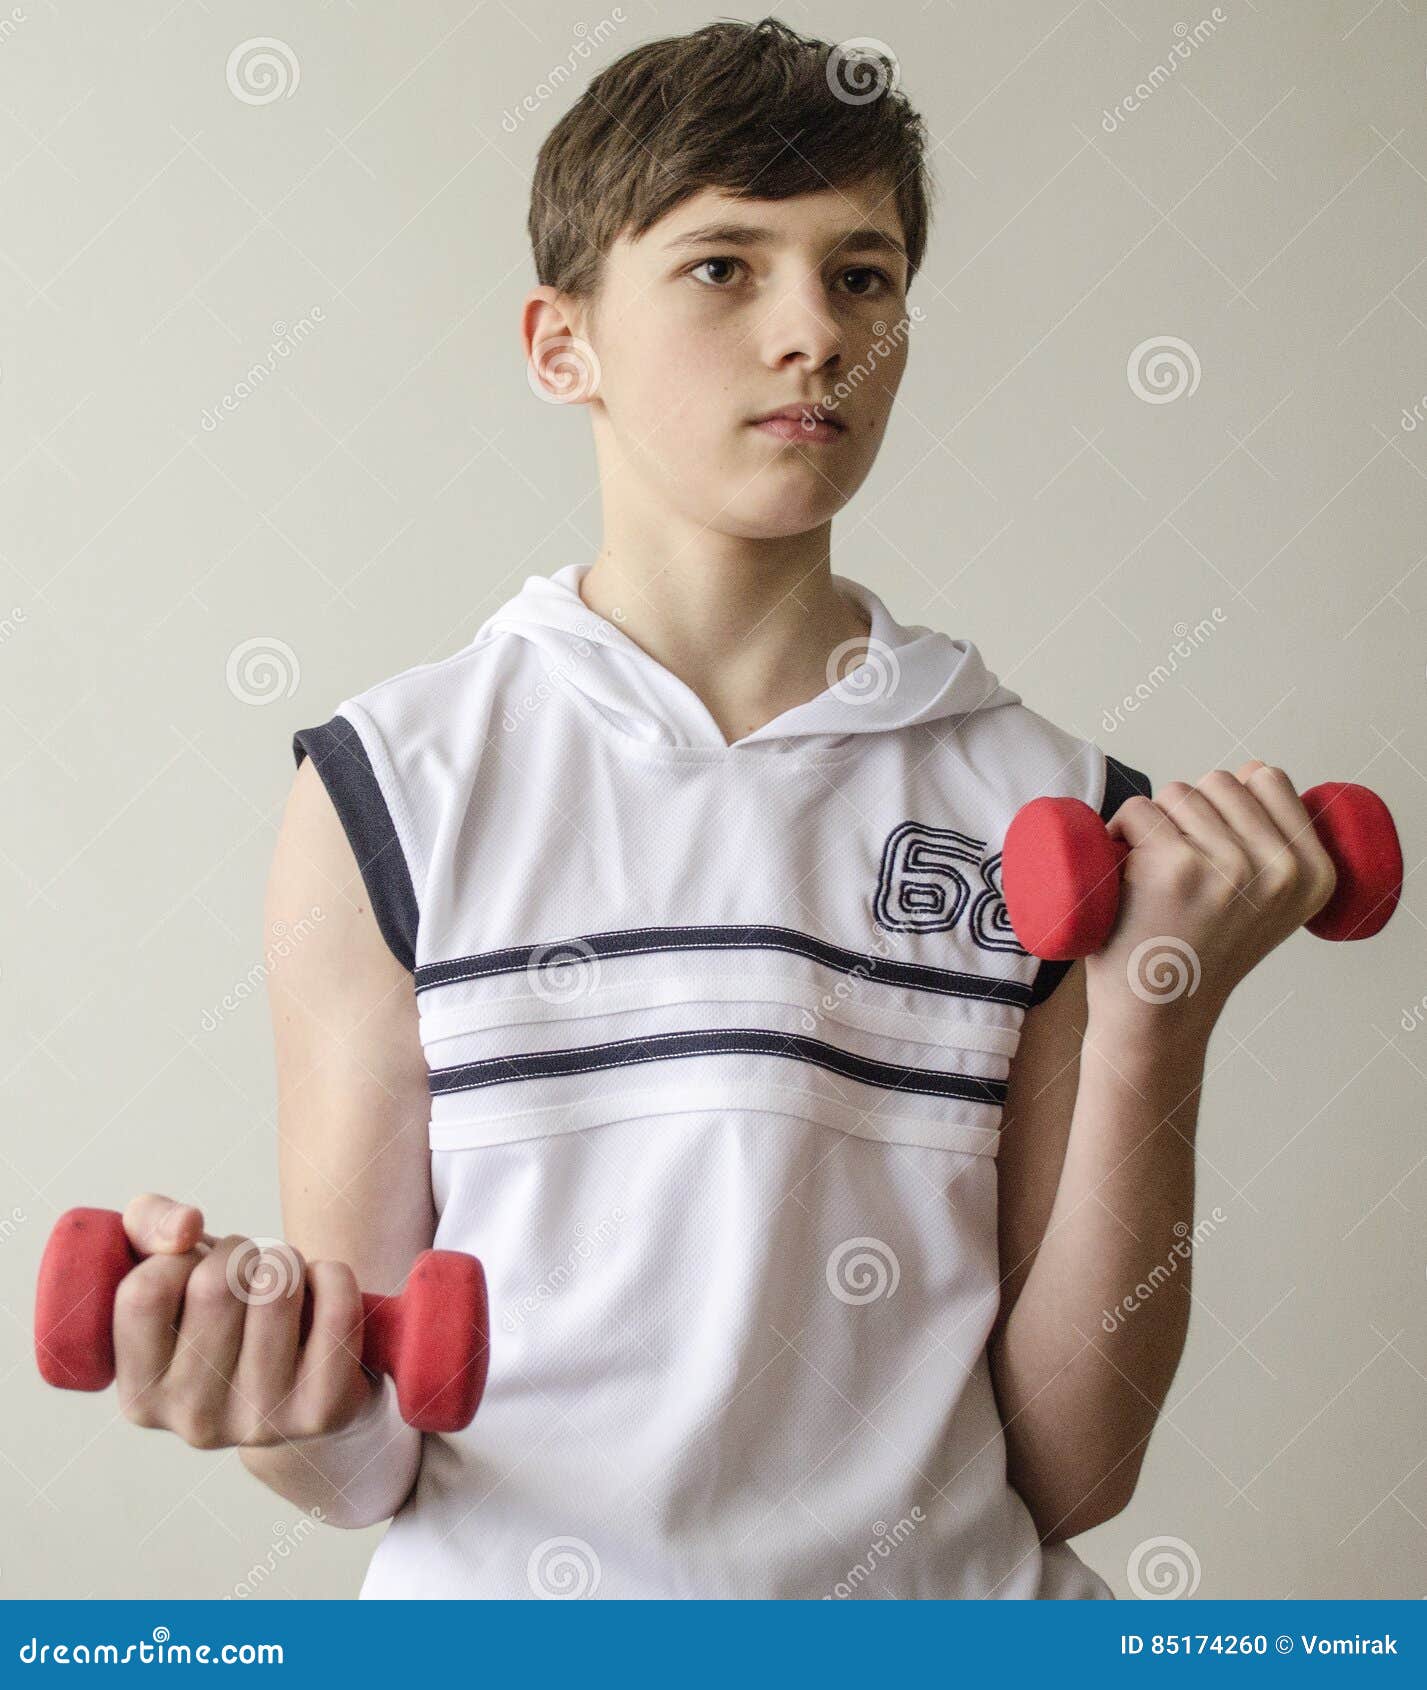 Teen boy forum. Подросток спортсмен. Фотосессия для спортсмена подростка. Мальчик с гантелями. Ребенок с гантелями.